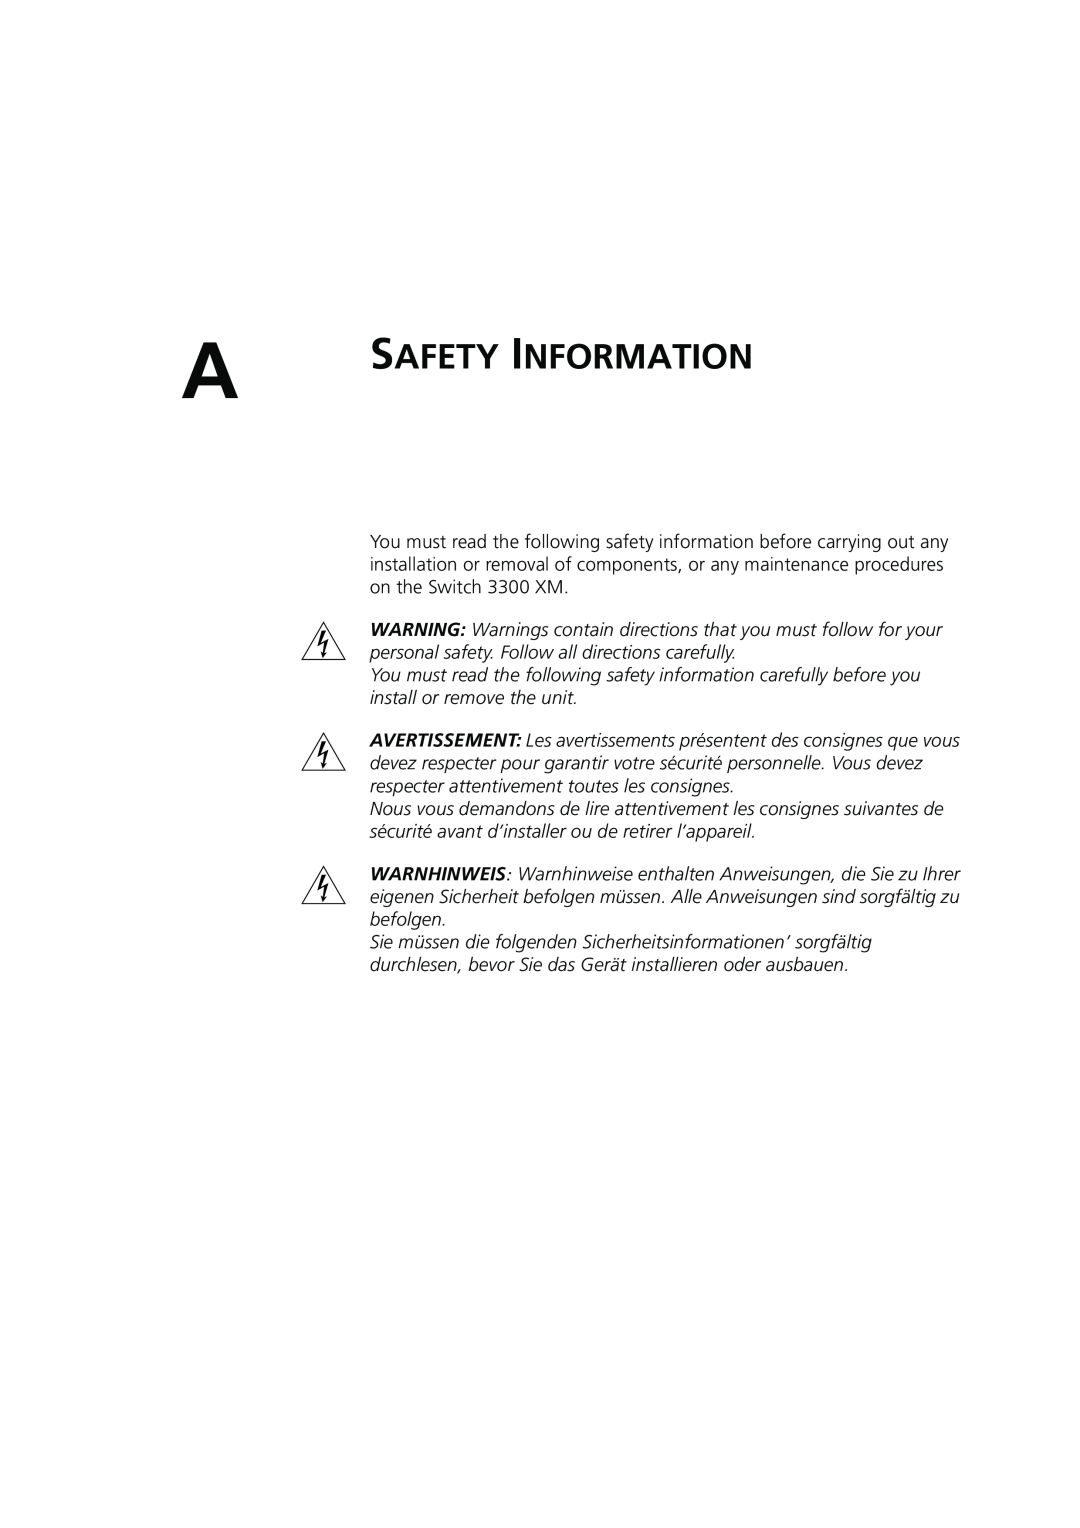 3Com DUA1698 manual Safety Information 